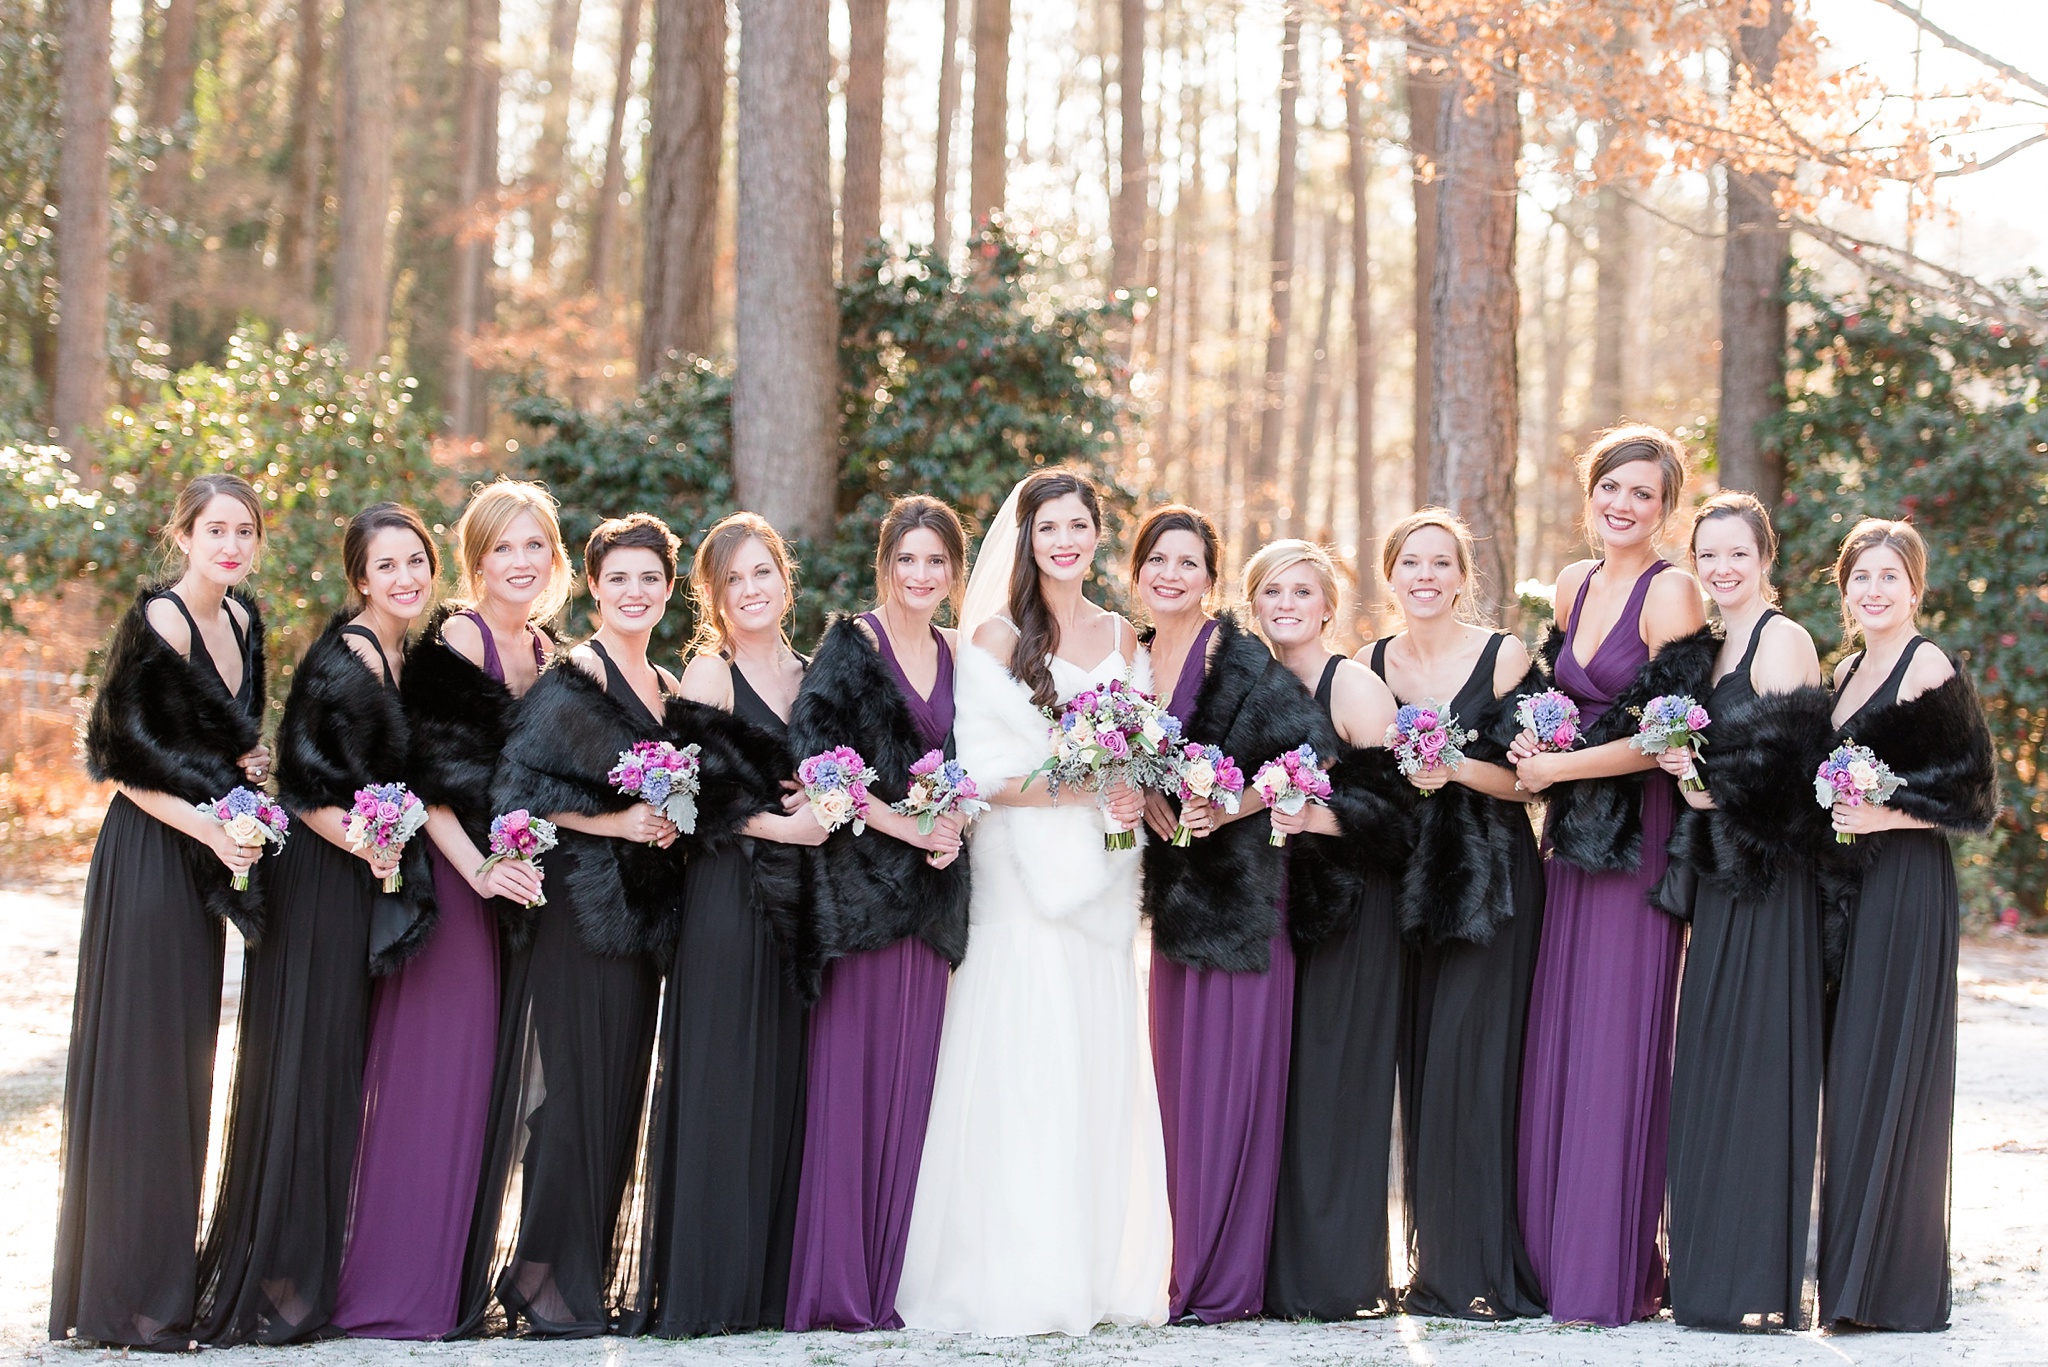 Snowy Winter Aldridge Gardens Wedding | Birmingham Alabama Wedding Photographers_0026.jpg